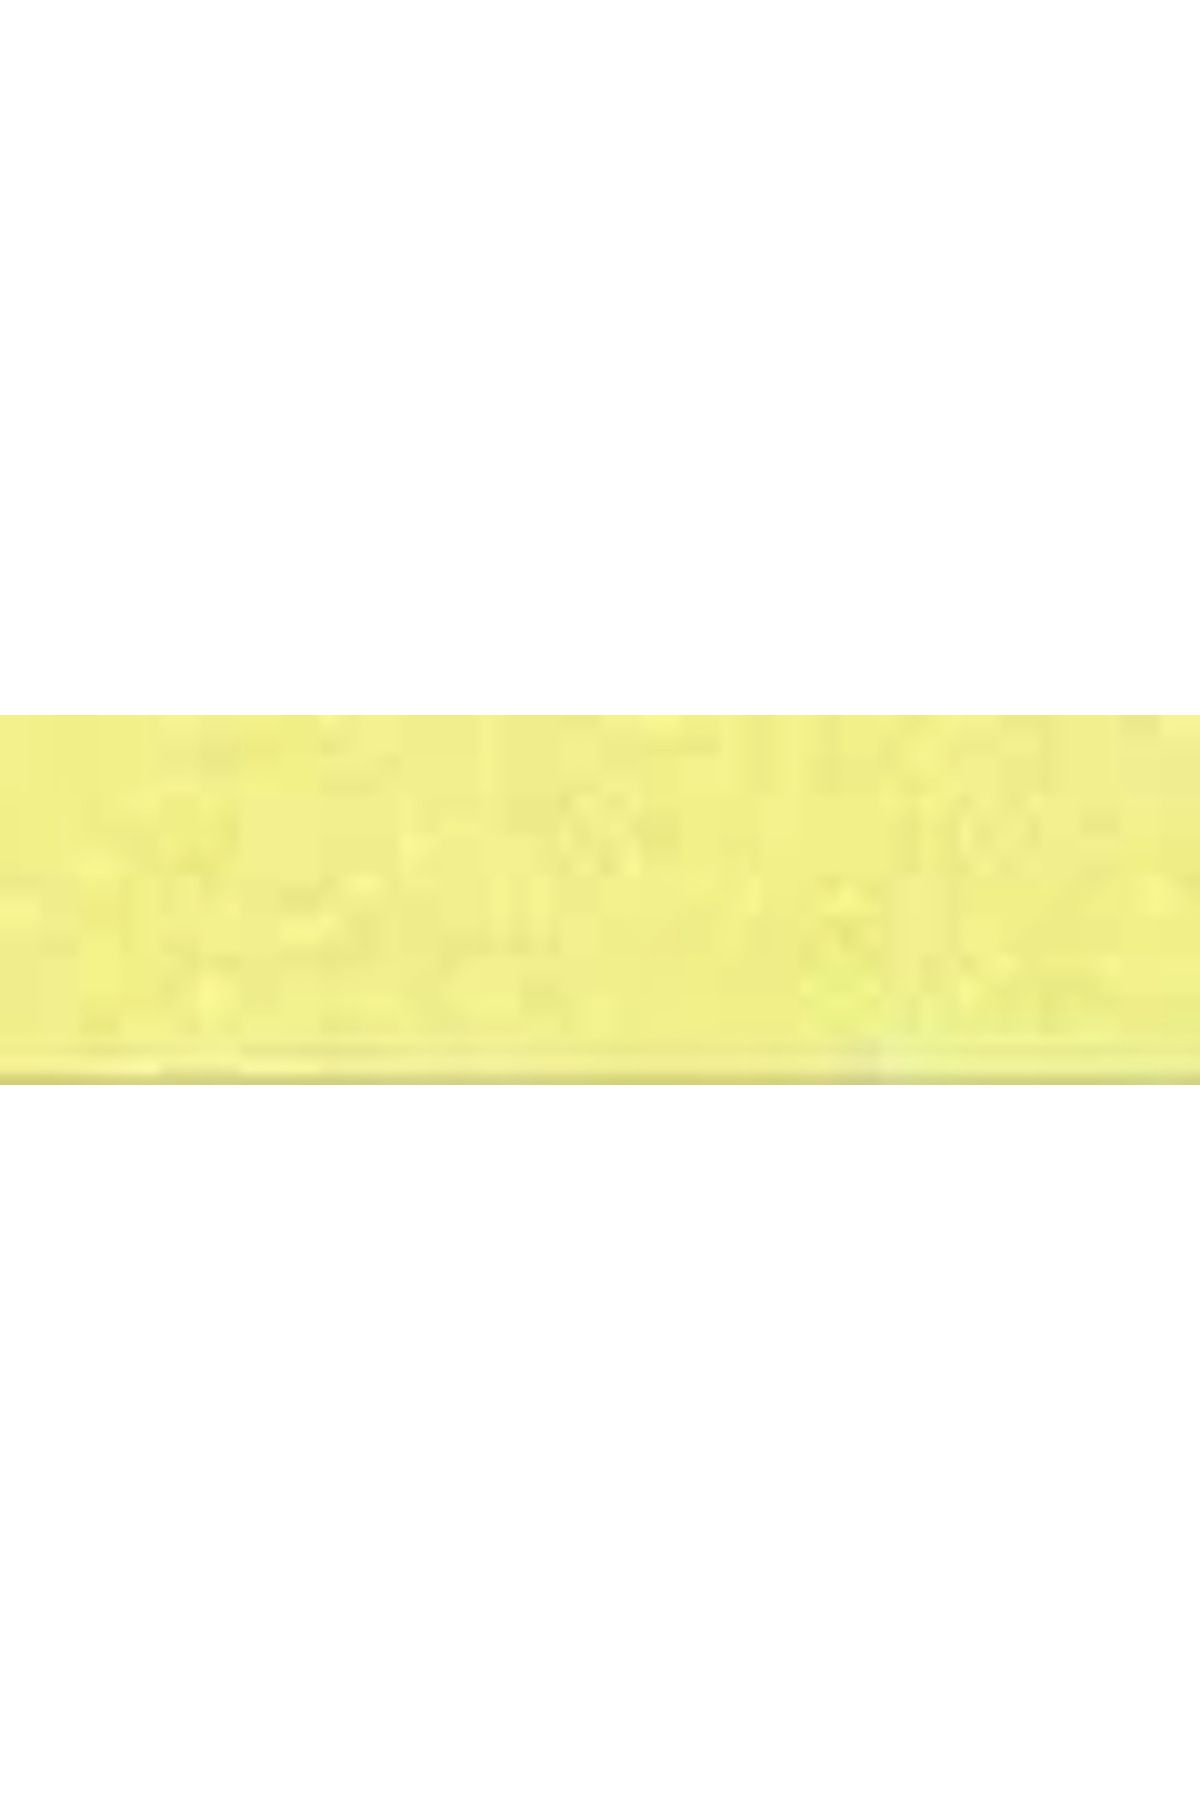 Artdeco 25ml Metalik Kumaş Boyası Sarı No:223